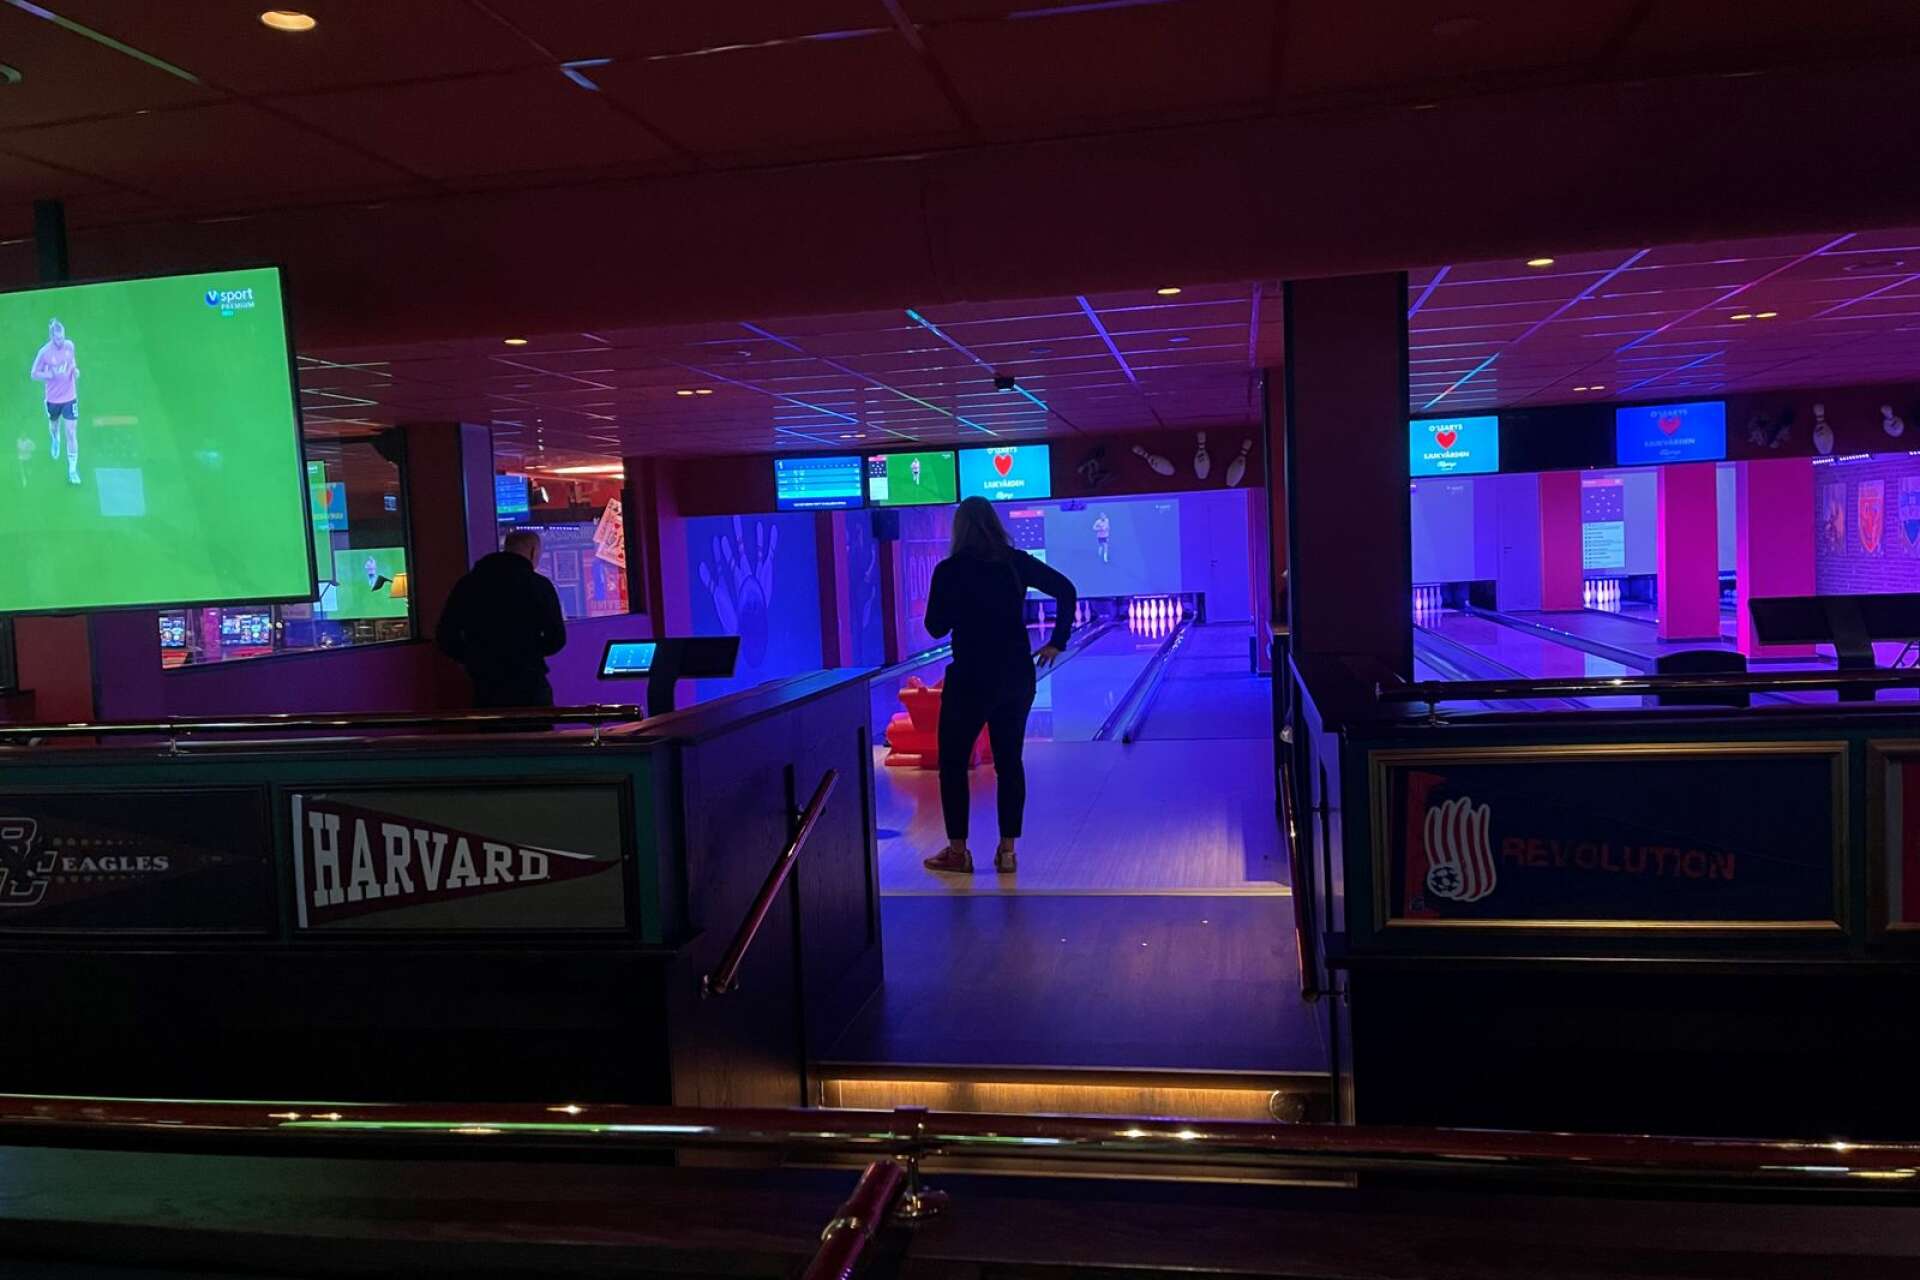 Bowlingbanorna på O’Learys precis efter öppning. En stund senare var de fullsatta.